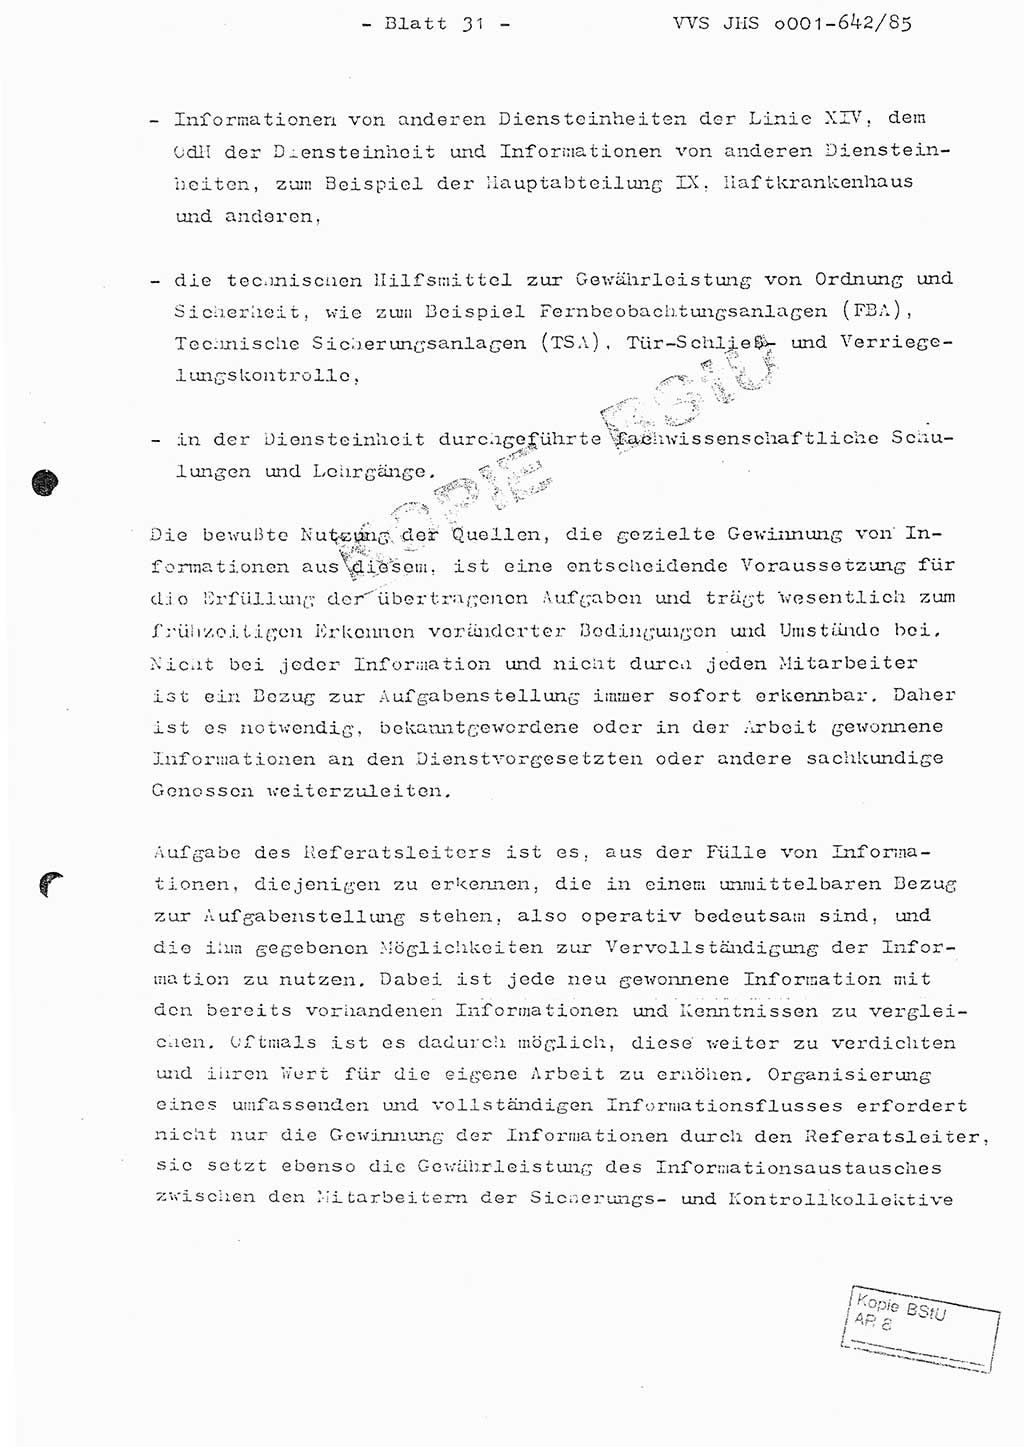 Fachschulabschlußarbeit Oberleutnant Lothar Fahland (Abt. ⅩⅣ), Ministerium für Staatssicherheit (MfS) [Deutsche Demokratische Republik (DDR)], Juristische Hochschule (JHS), Vertrauliche Verschlußsache (VVS) o001-642/85, Potsdam 1985, Blatt 31 (FS-Abschl.-Arb. MfS DDR JHS VVS o001-642/85 1985, Bl. 31)